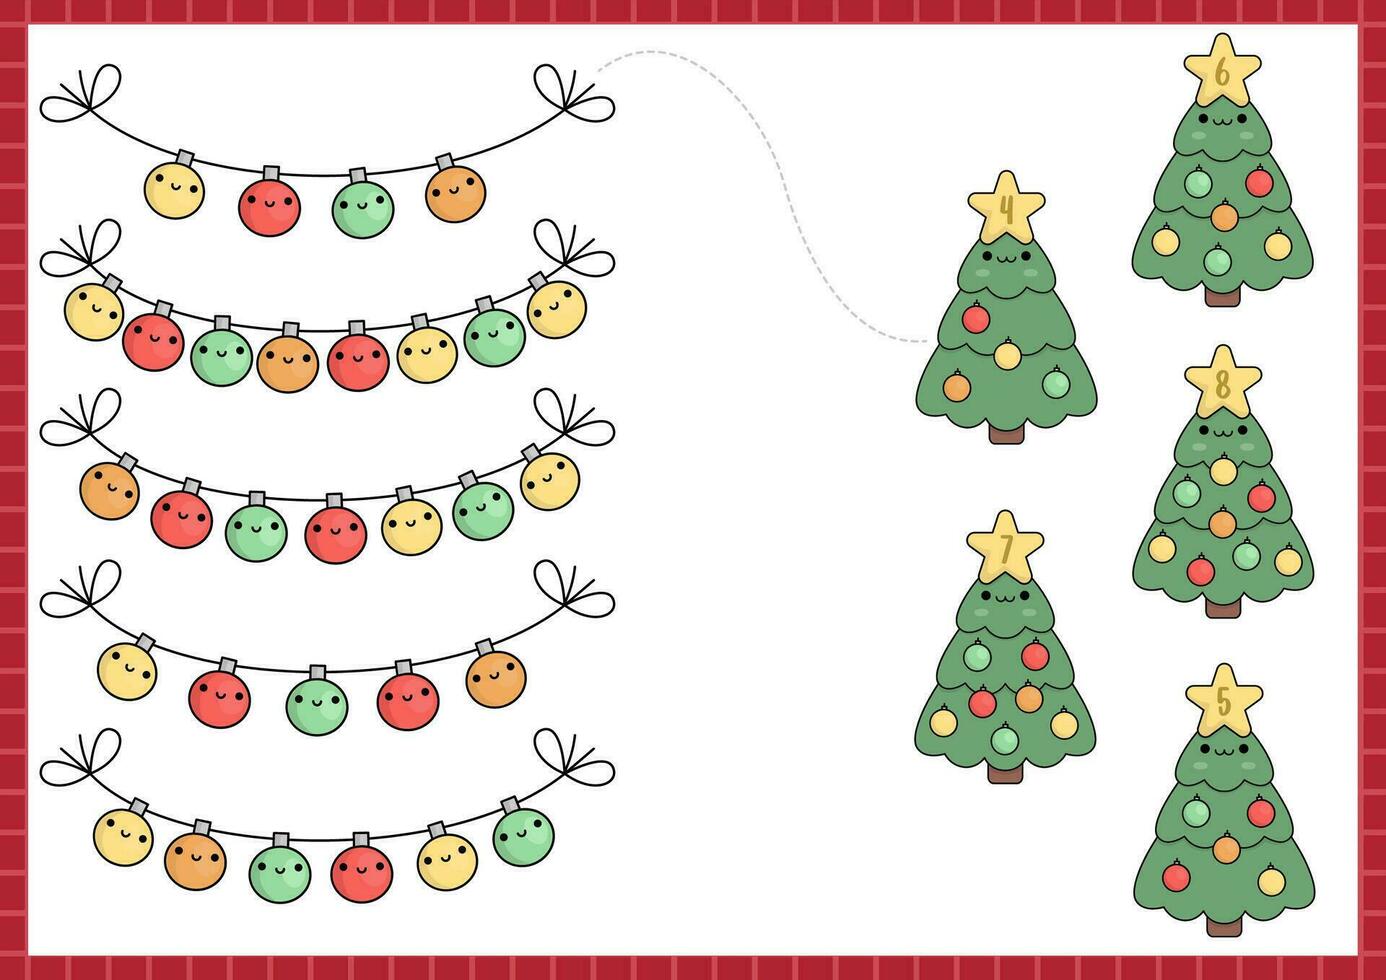 jul matchande spel med söt söt gran träd, färgad bollar. vinter- Semester matematik aktivitet för förskola ungar. pedagogisk tryckbar ny år räkning kalkylblad med tecknad serie tecken vektor